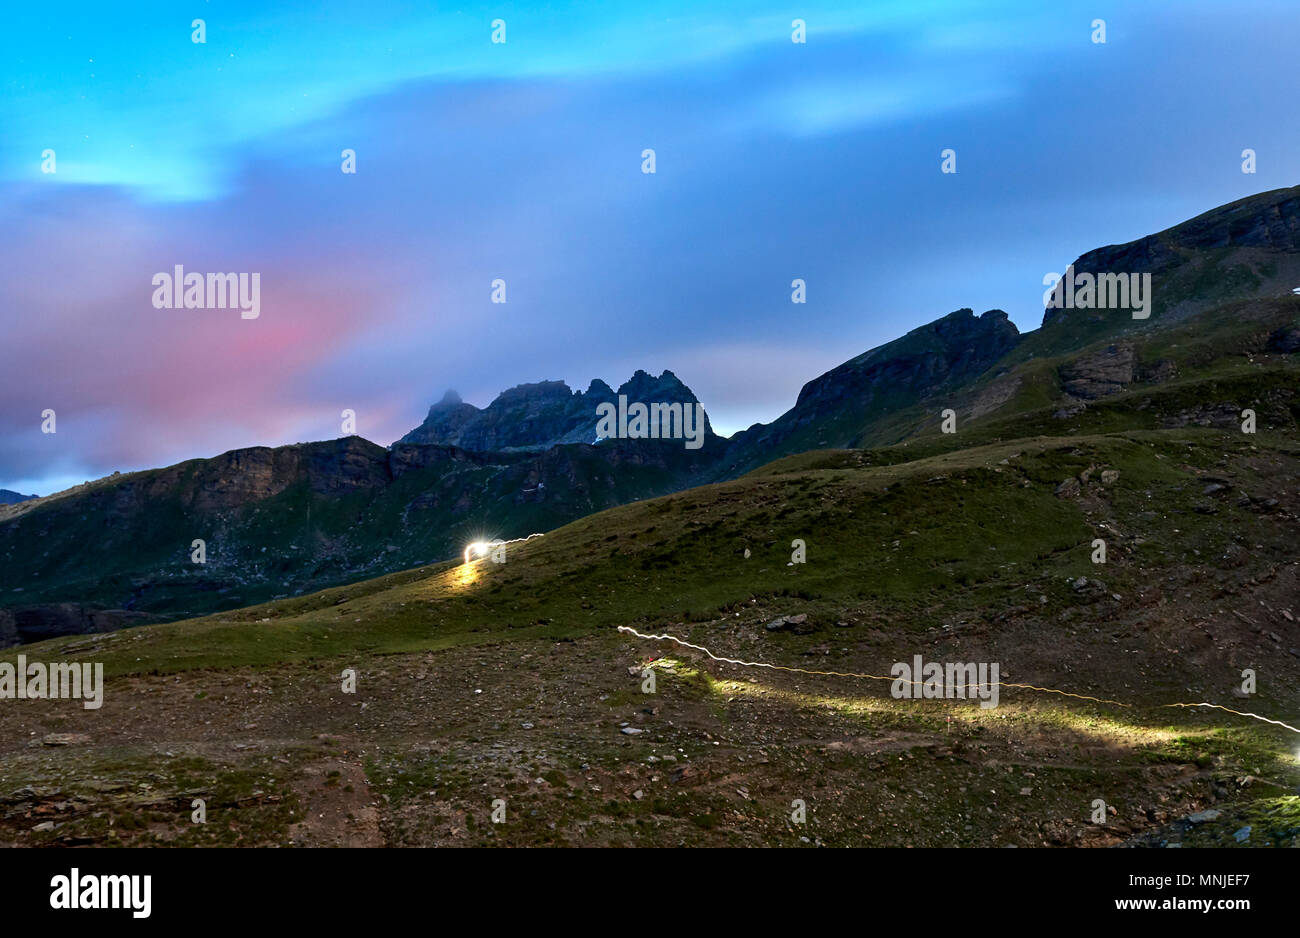 Paysage avec montagnes au coucher du soleil et en légèreté, Alpe Devero, Verbania, Italie Banque D'Images